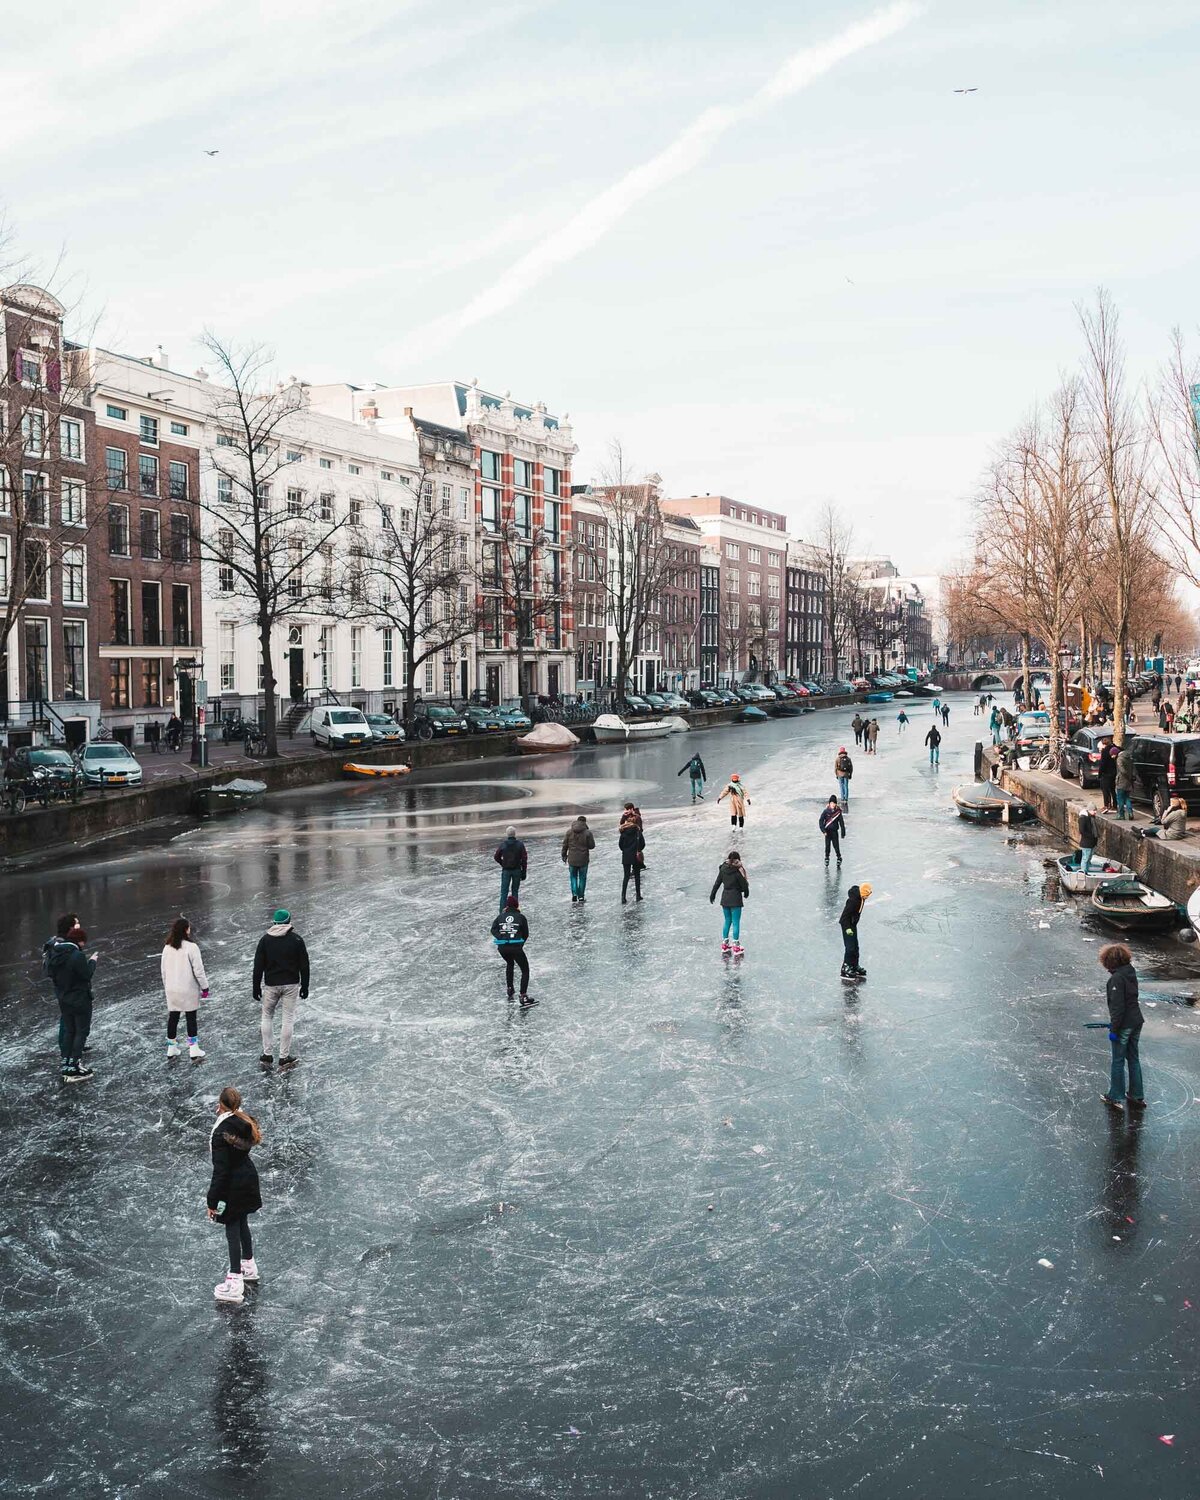 Frozen-Canals-Amsterdam-Netherlands-Winter-FindUsLost-01163